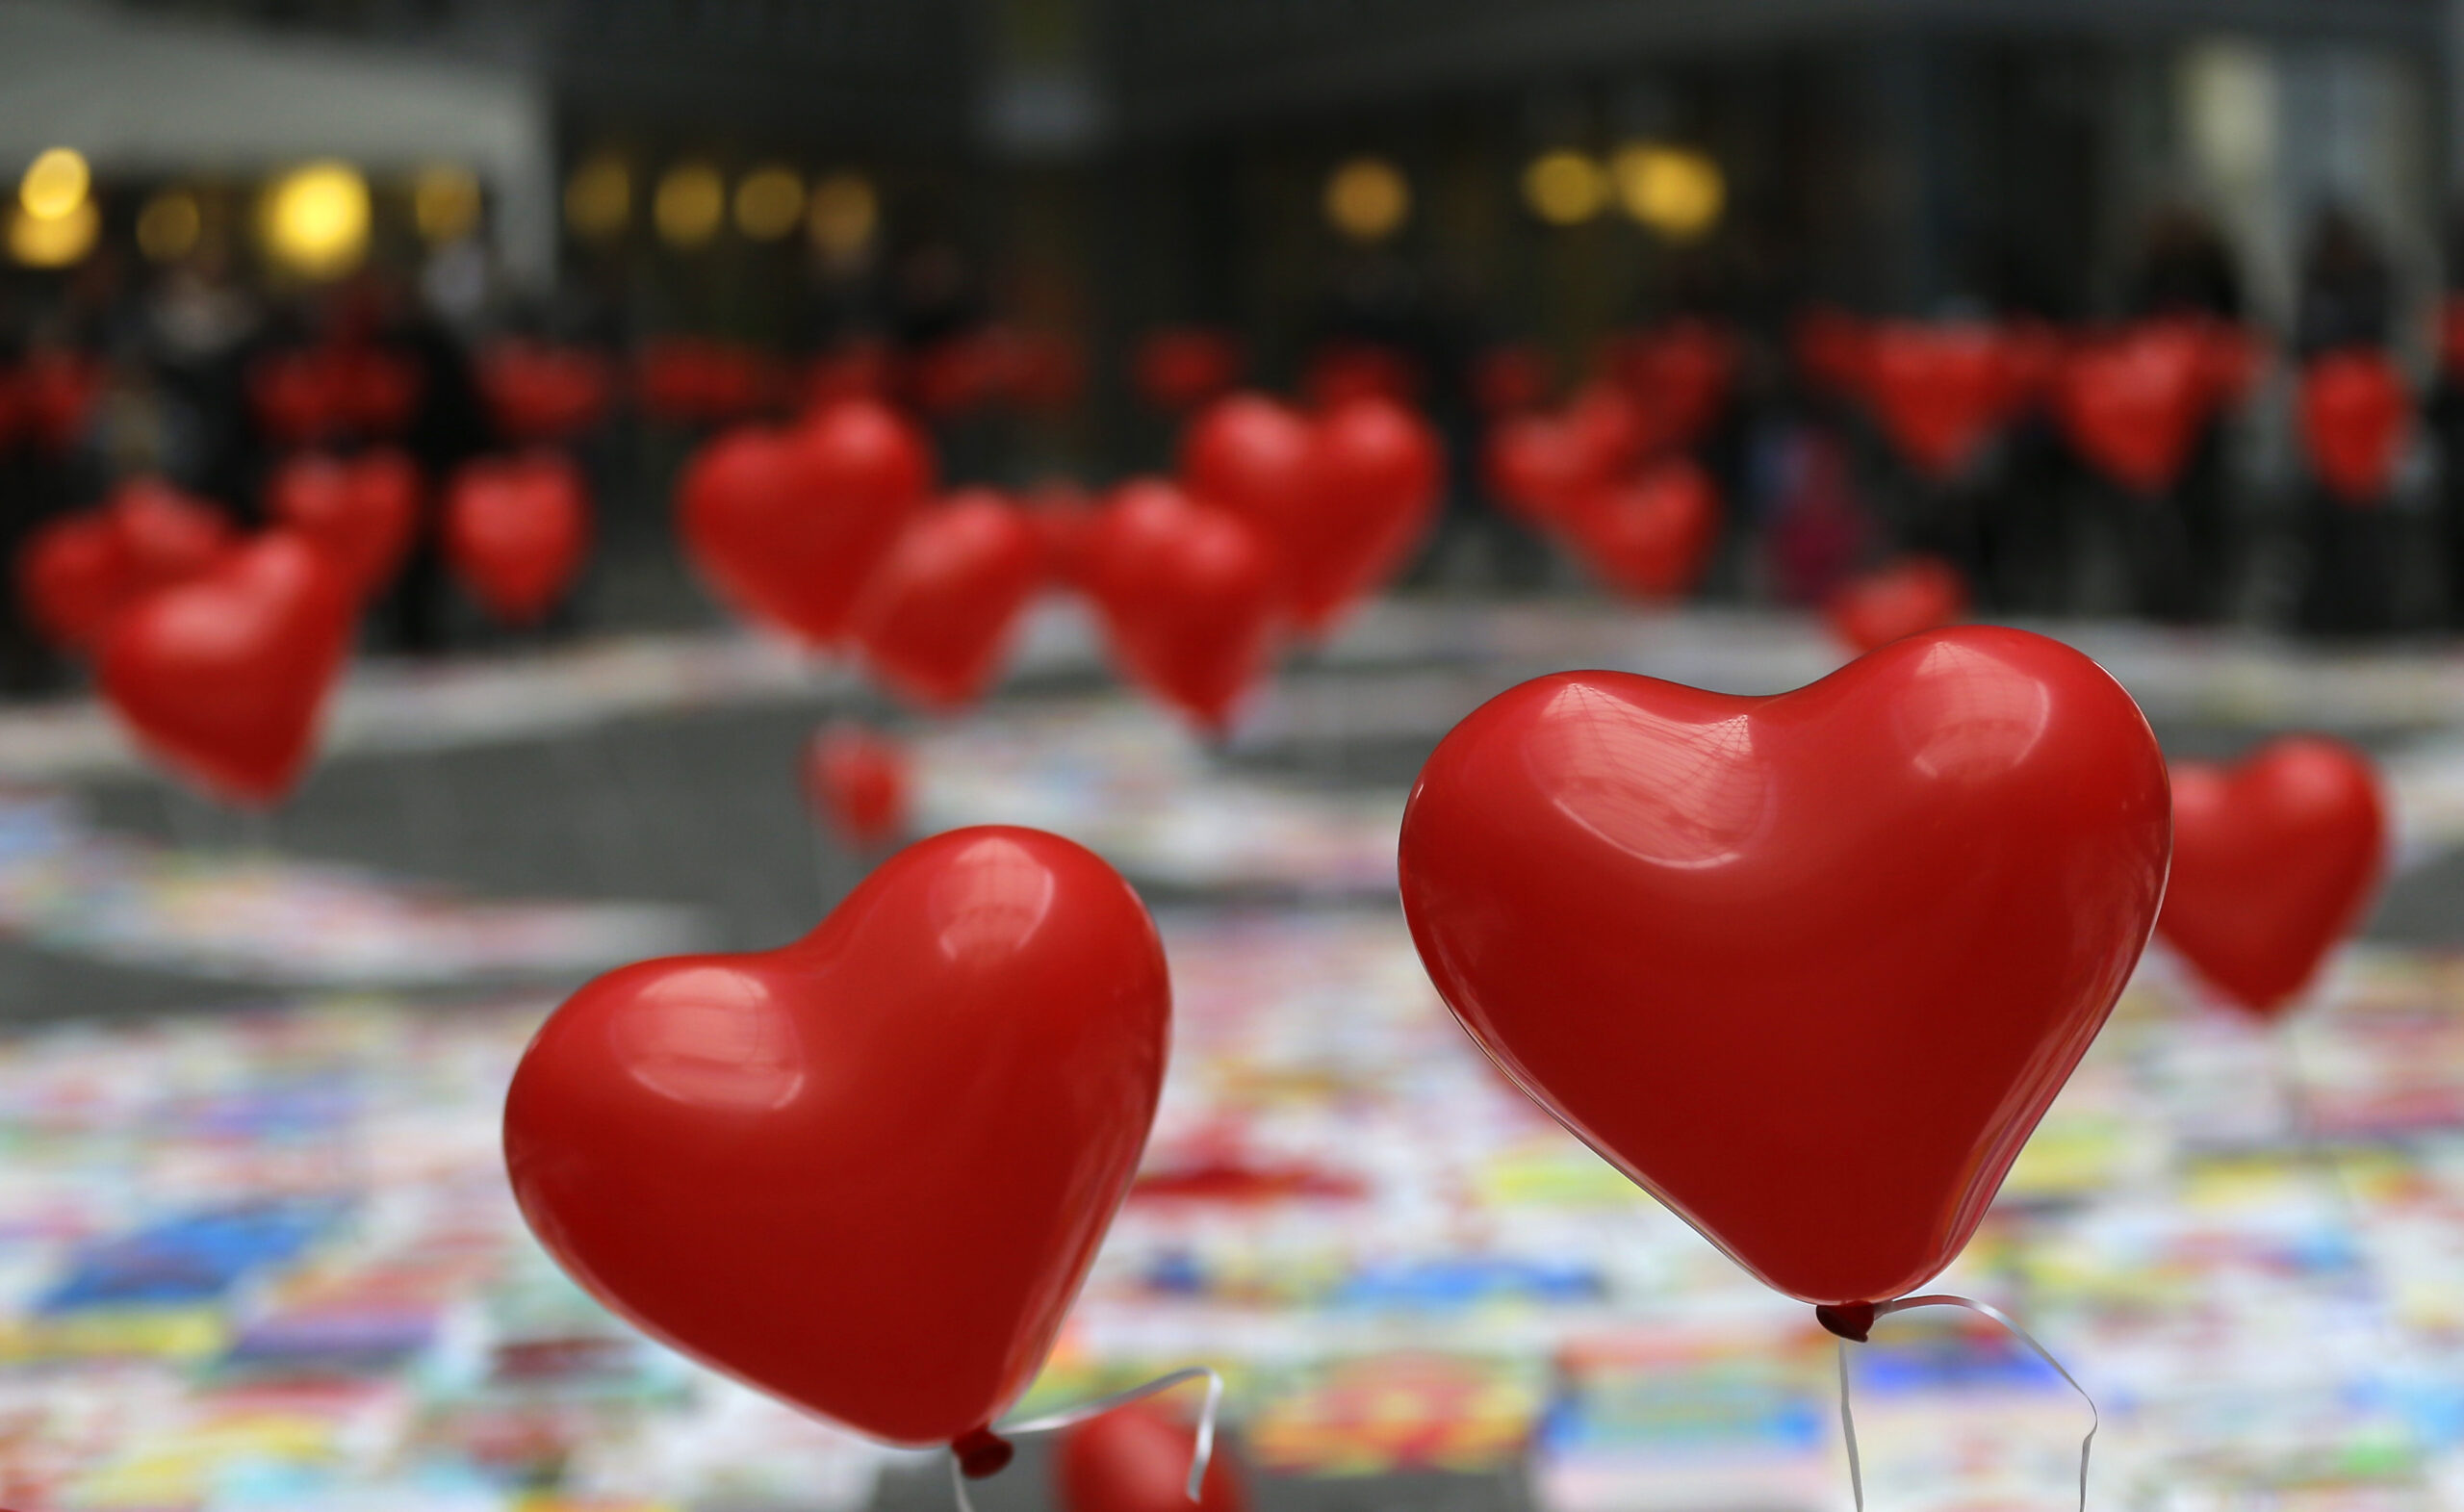 heart-shaped balloons